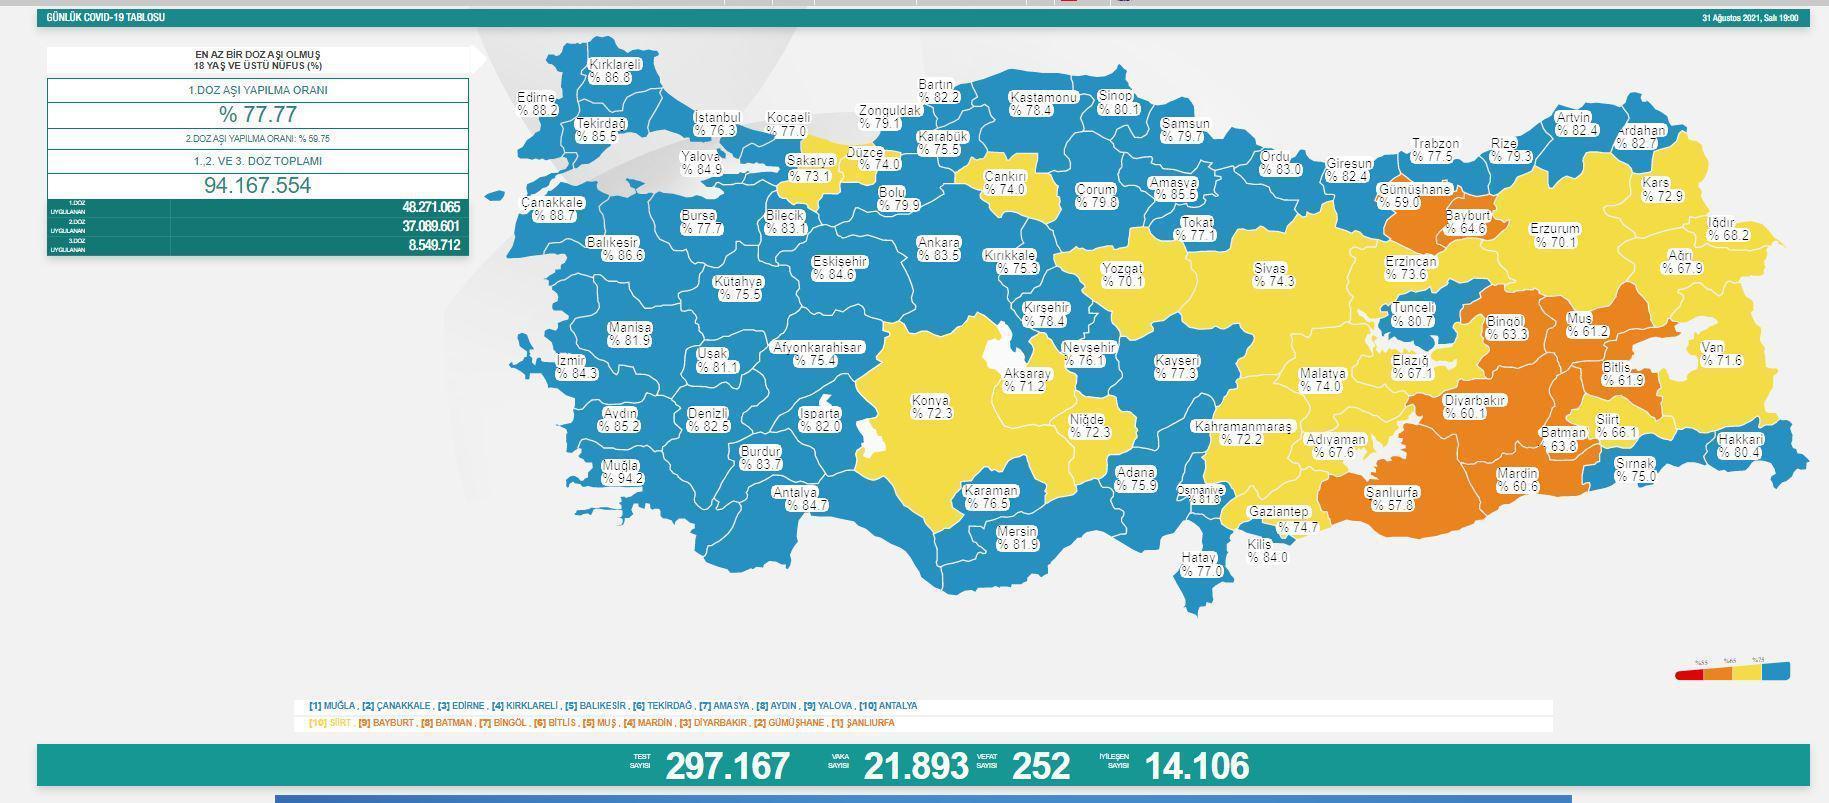 31 Ağustos 2021 korona tablosu açıklandı İşte Türkiyede son vaka sayısı